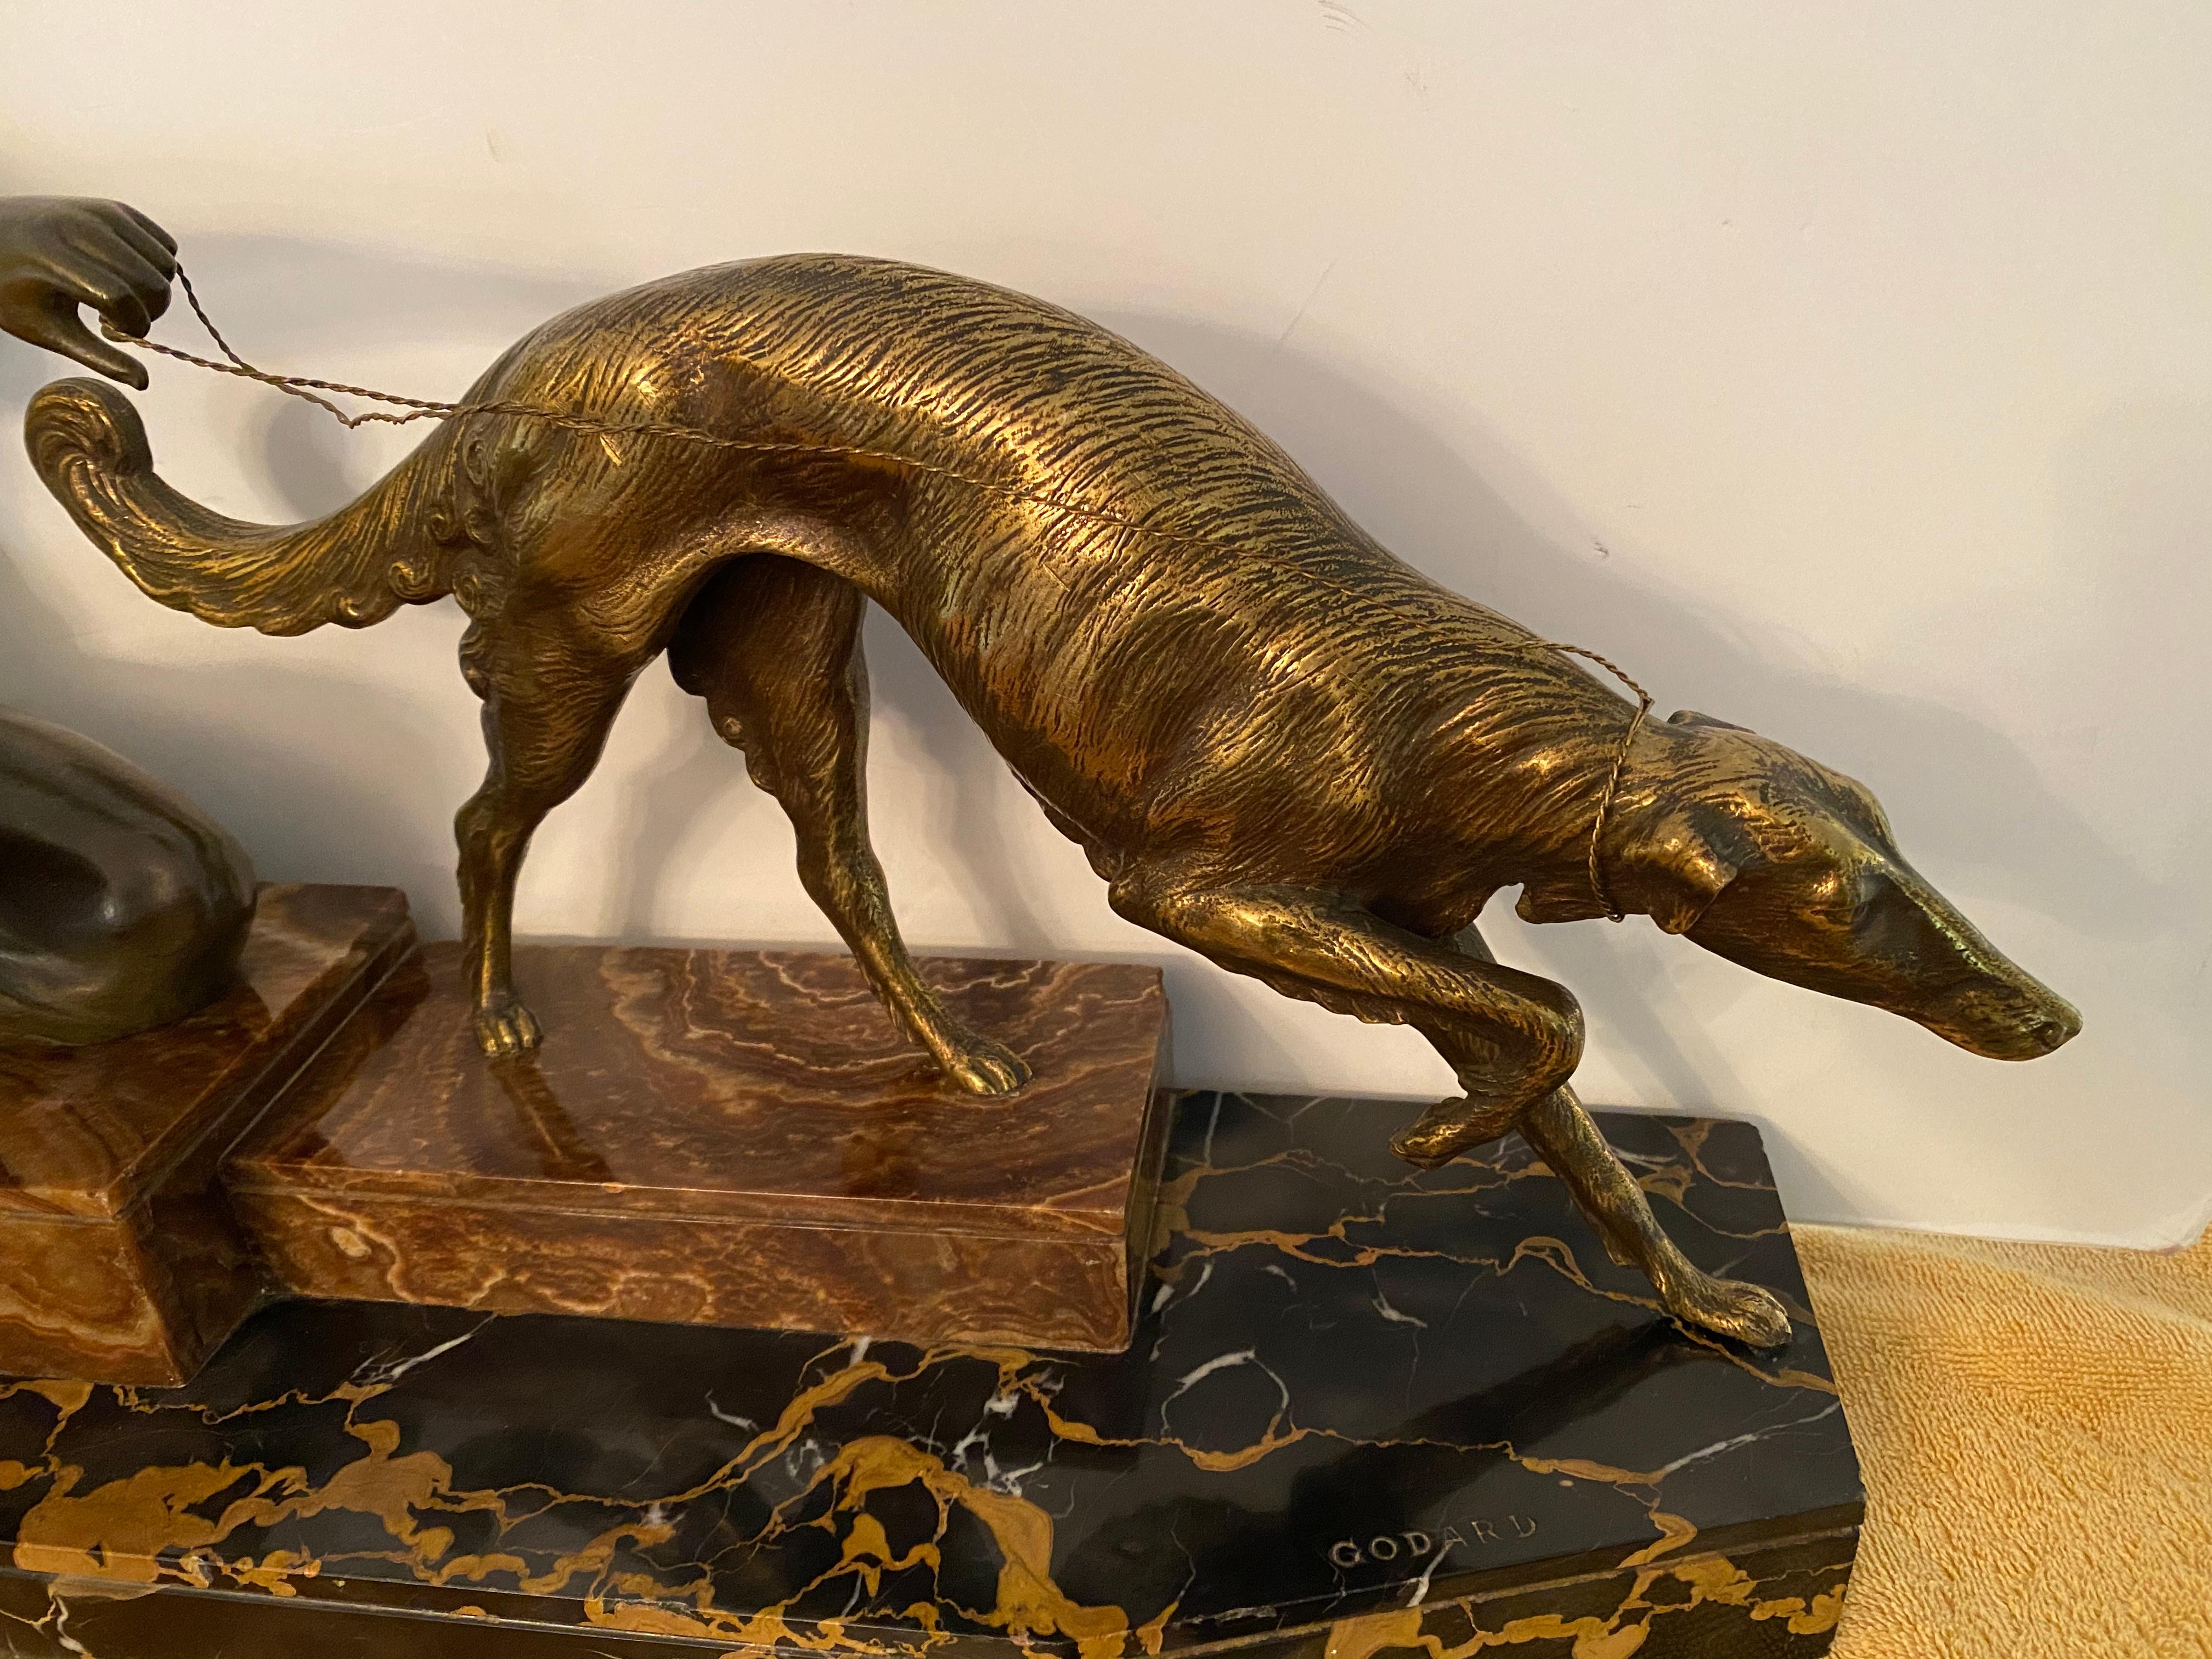 Un superbe groupe de figurines Art déco français représentant une chasseresse et son Borzoi.
Le bronze a une belle patine chaude et la base est composée de deux types de marbre.
Elle est signée sur la base et le dos est estampillé bronze.